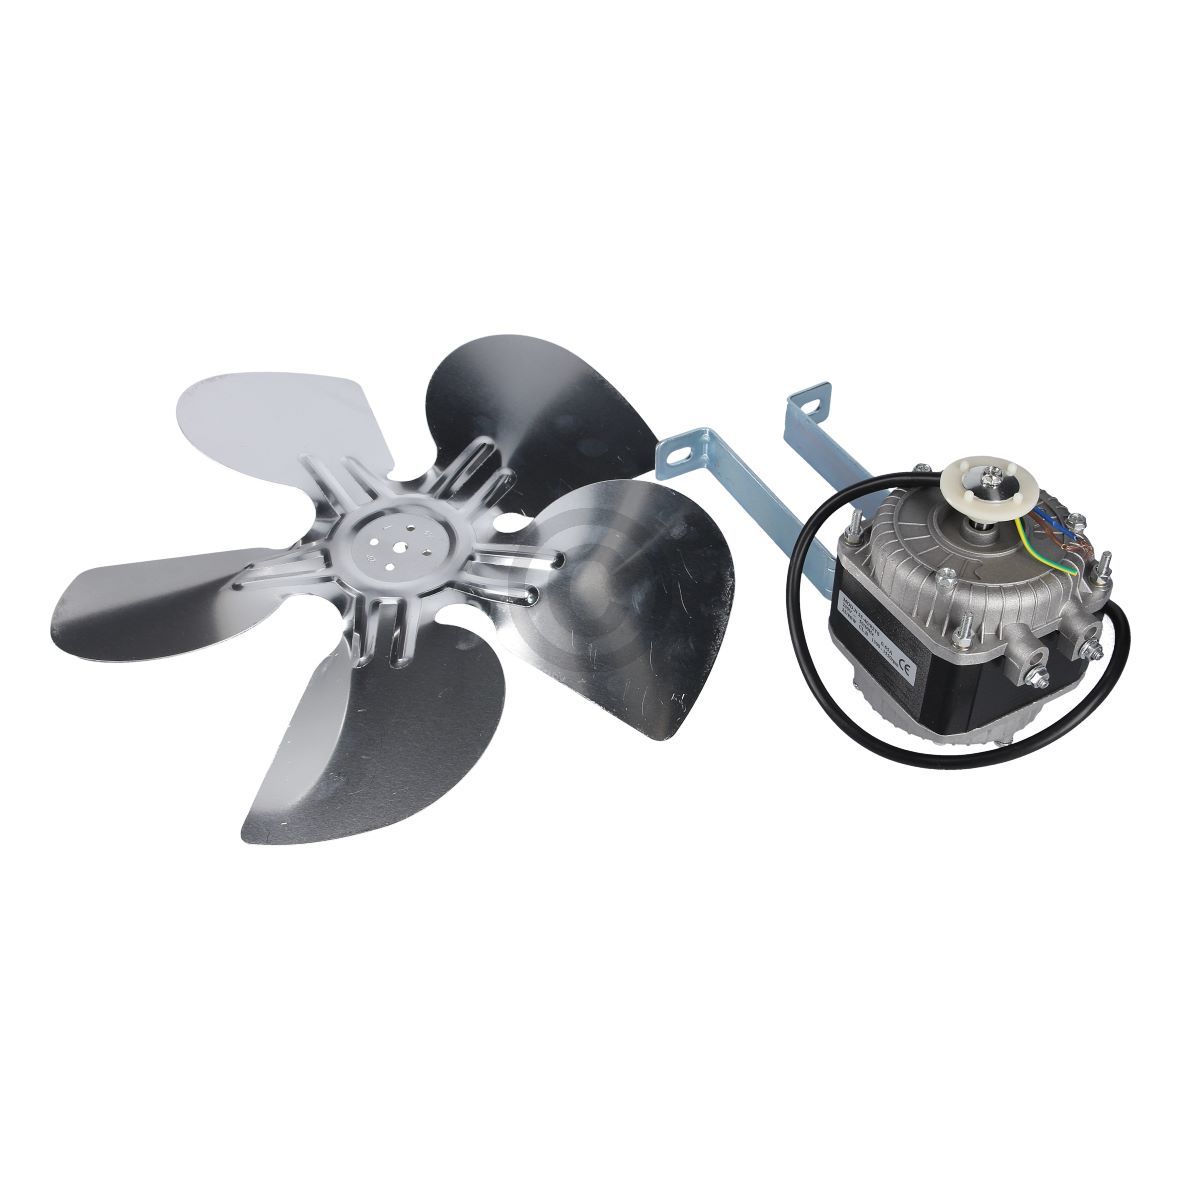 Ventilator universal kompatibel mit 25 Watt 230 Volt mit Haltebügel Flügel für Kühlschrank